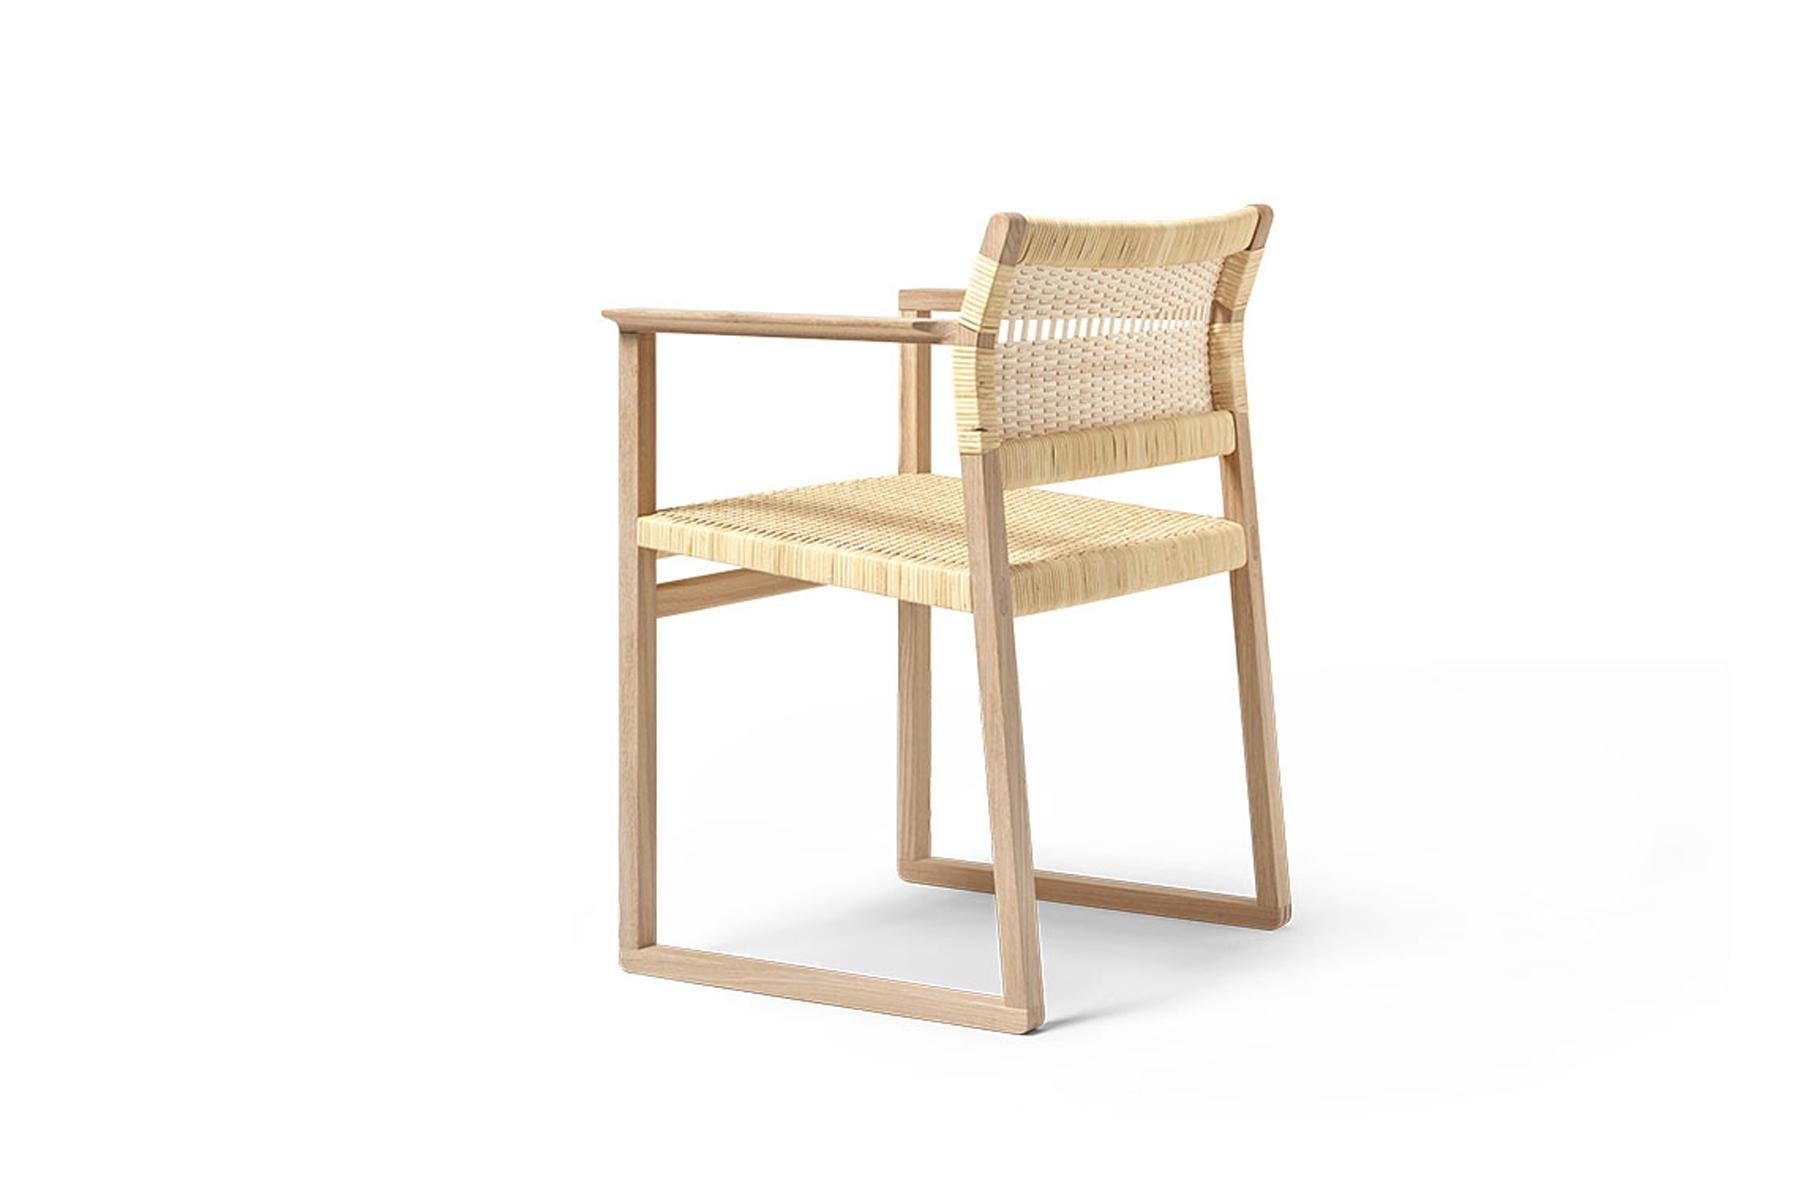 Der Stuhl BM61 und der Sessel BM62 sind schlank und doch solide, einfach und doch auffallend. Sie bringen uns zurück zur Natur, indem sie die Essenz eines Konzepts in einfachen Formen wiedergeben. Freiliegende Konstruktion. Und authentische